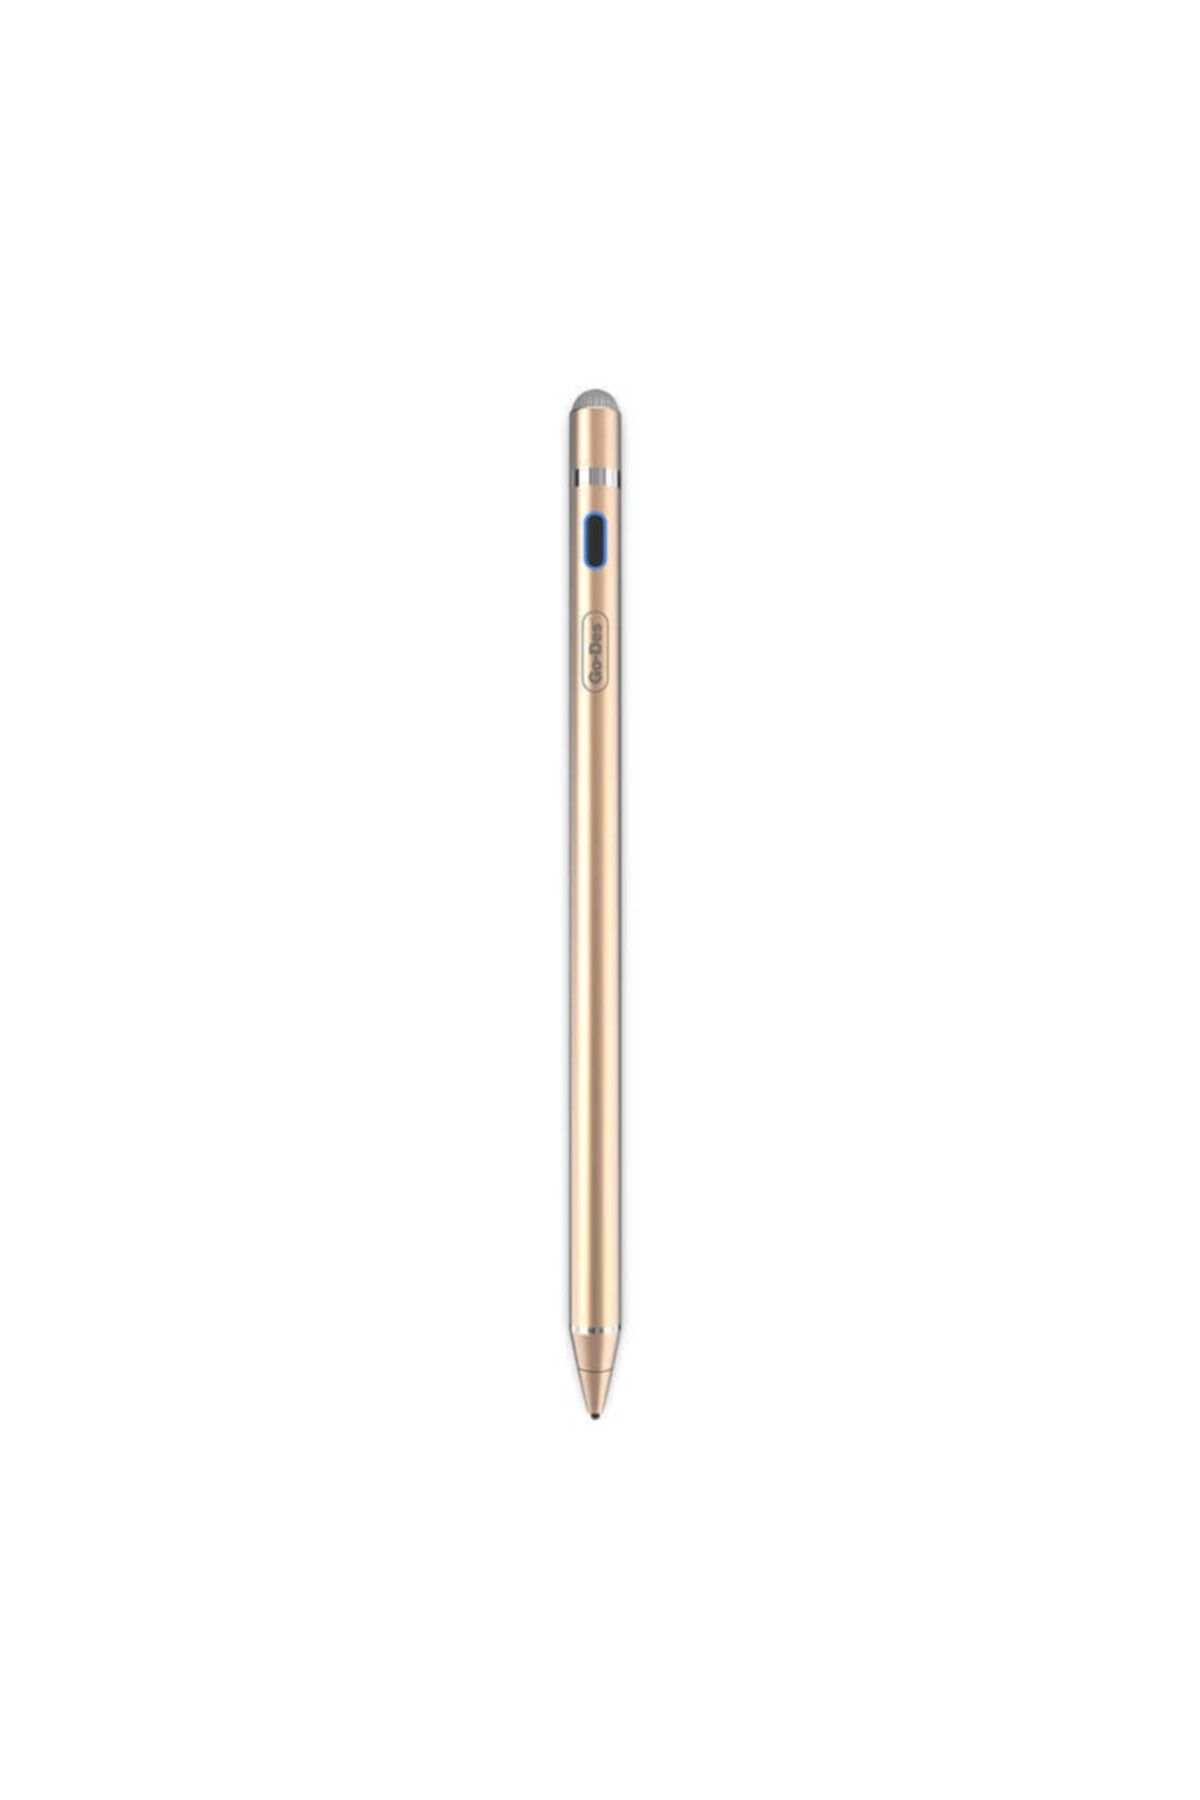 Fogy Ipad Iphone Android Uyumlu Pencil Dokunmatik Stylus Kalem